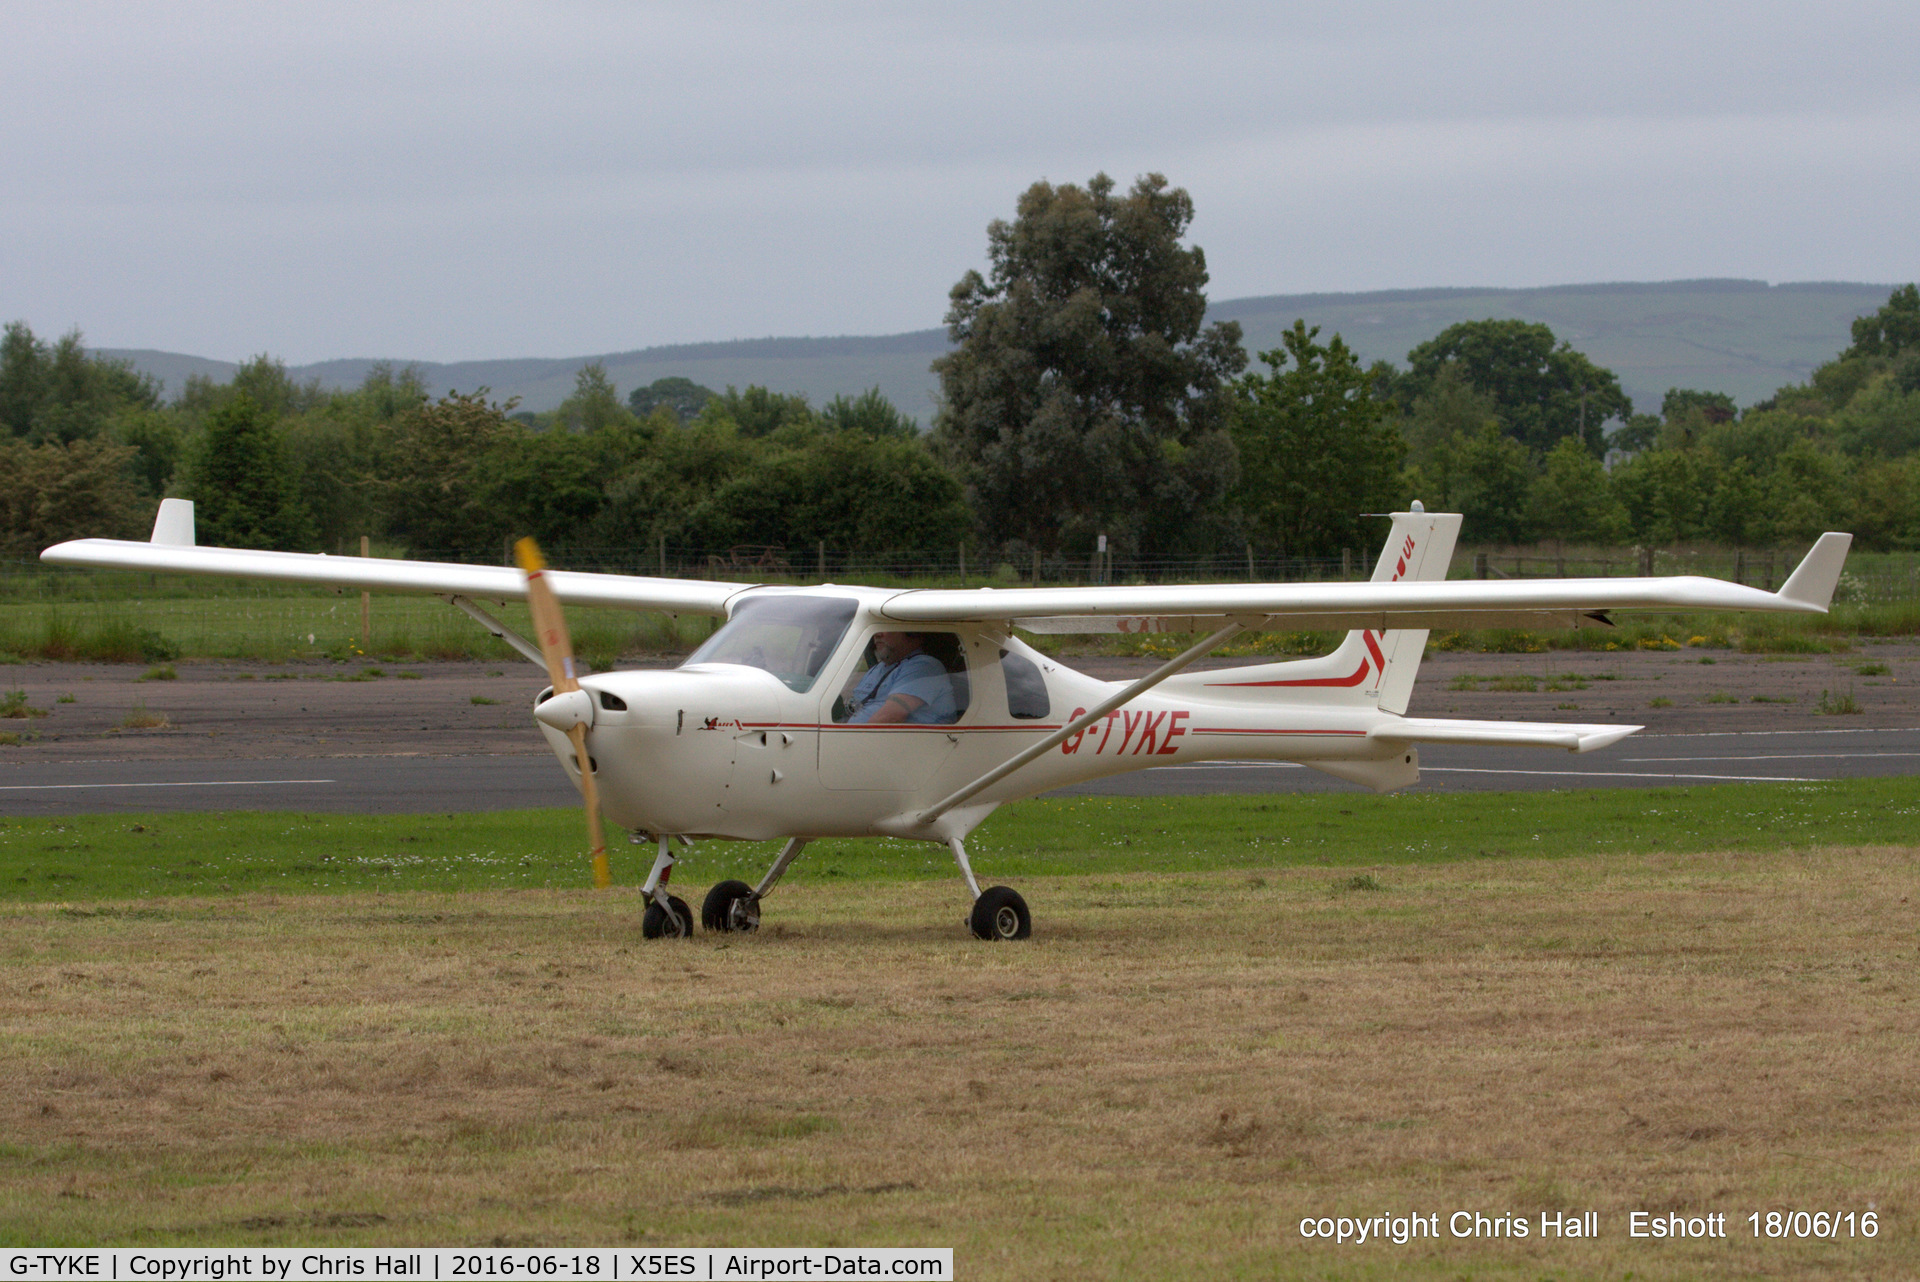 G-TYKE, 2001 Jabiru UL-450 C/N PFA 274A-13739, at the Great North Fly in. Eshott